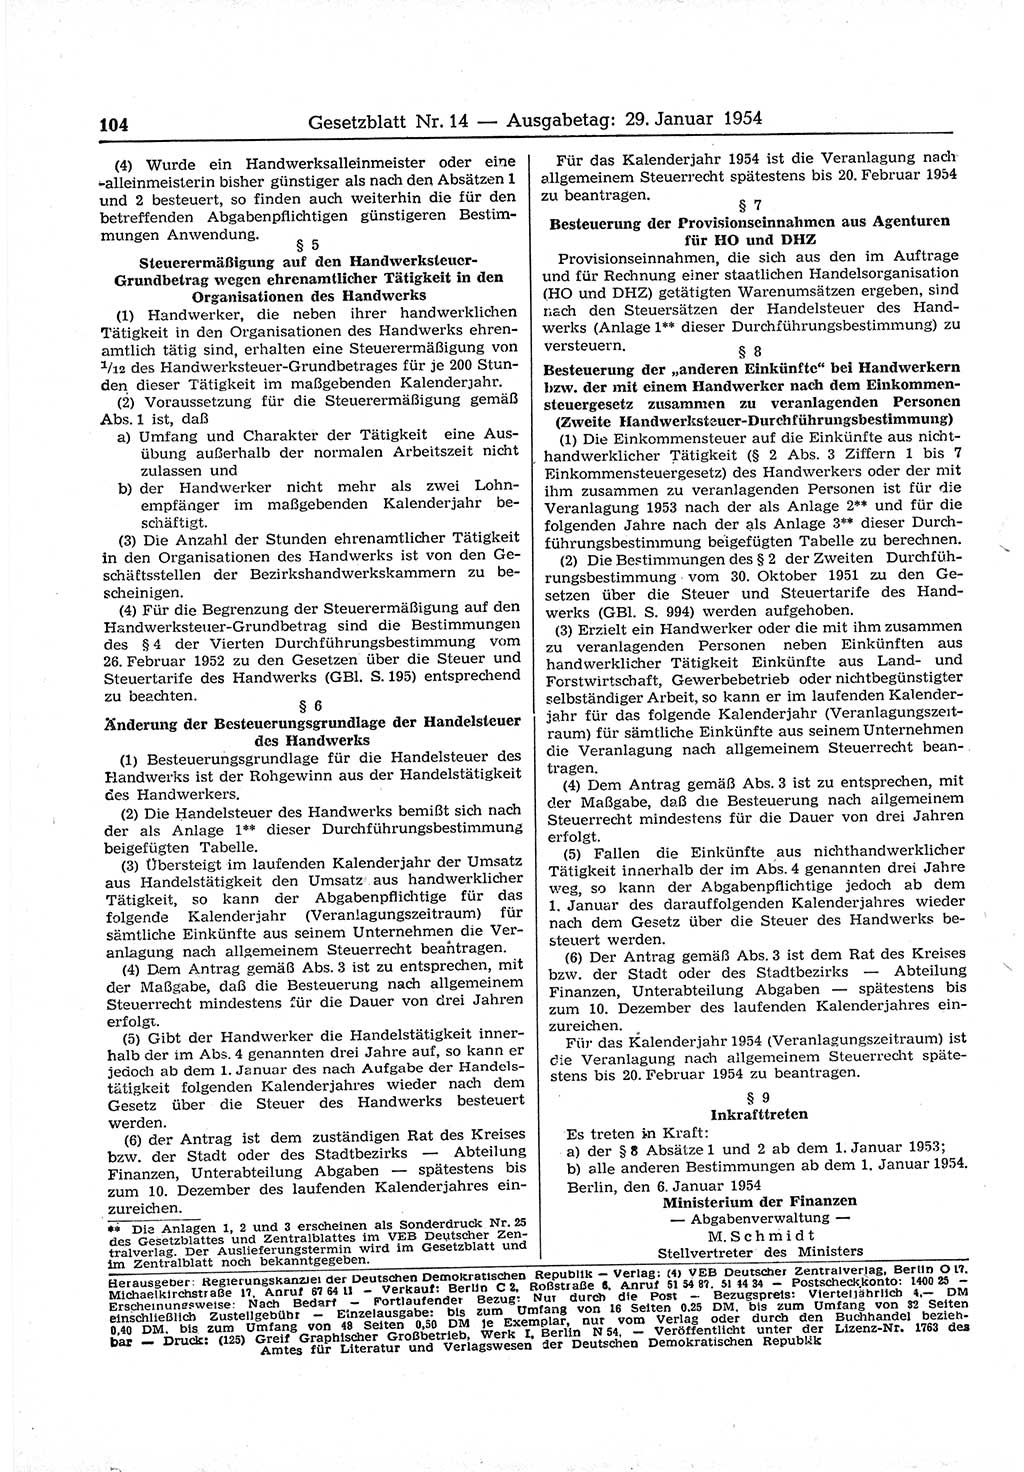 Gesetzblatt (GBl.) der Deutschen Demokratischen Republik (DDR) 1954, Seite 104 (GBl. DDR 1954, S. 104)